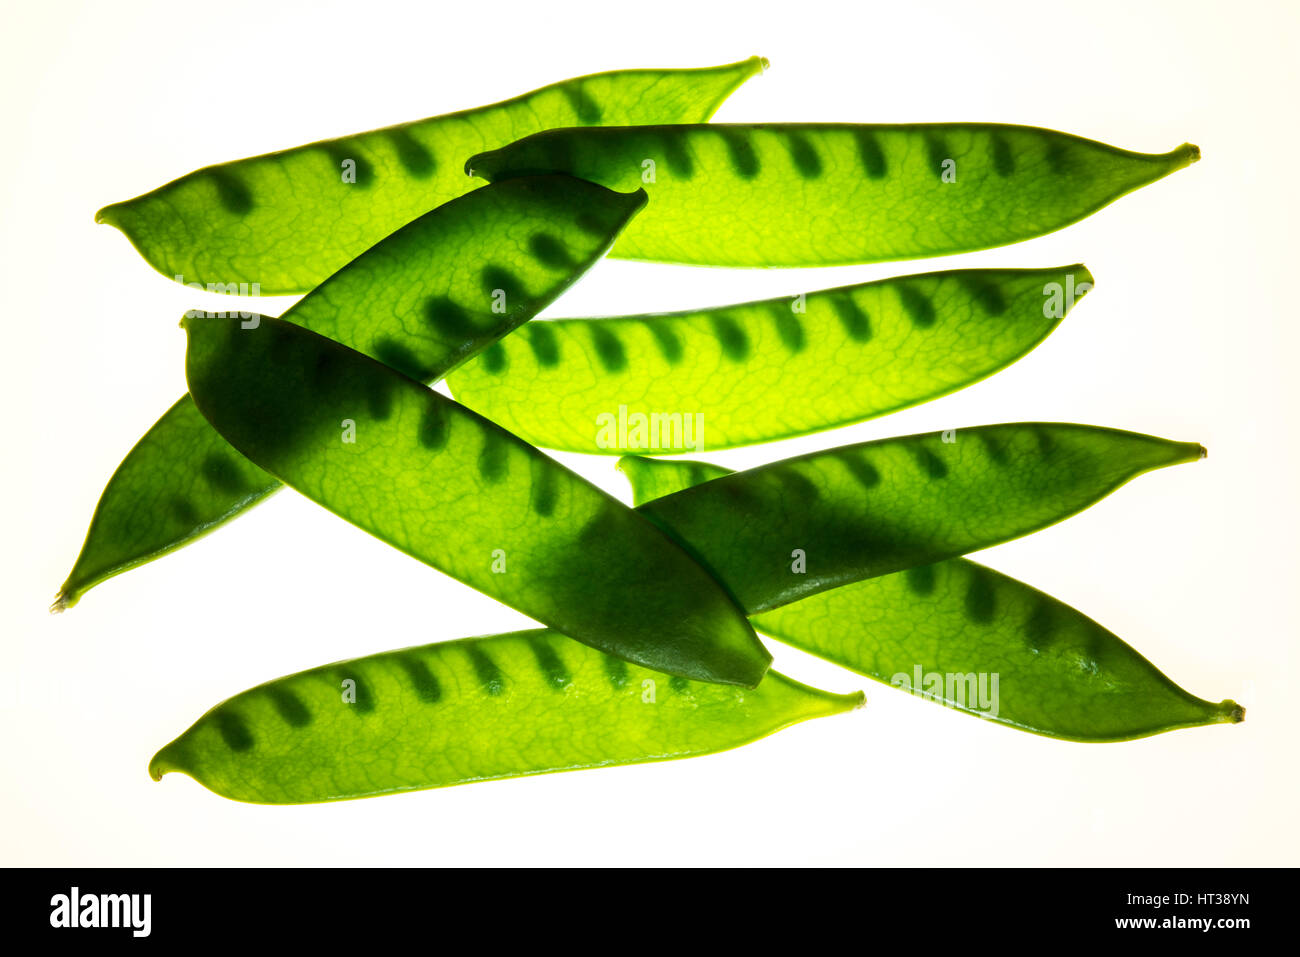 Sugar peas (Pisum sativum saccharatum) Stock Photo